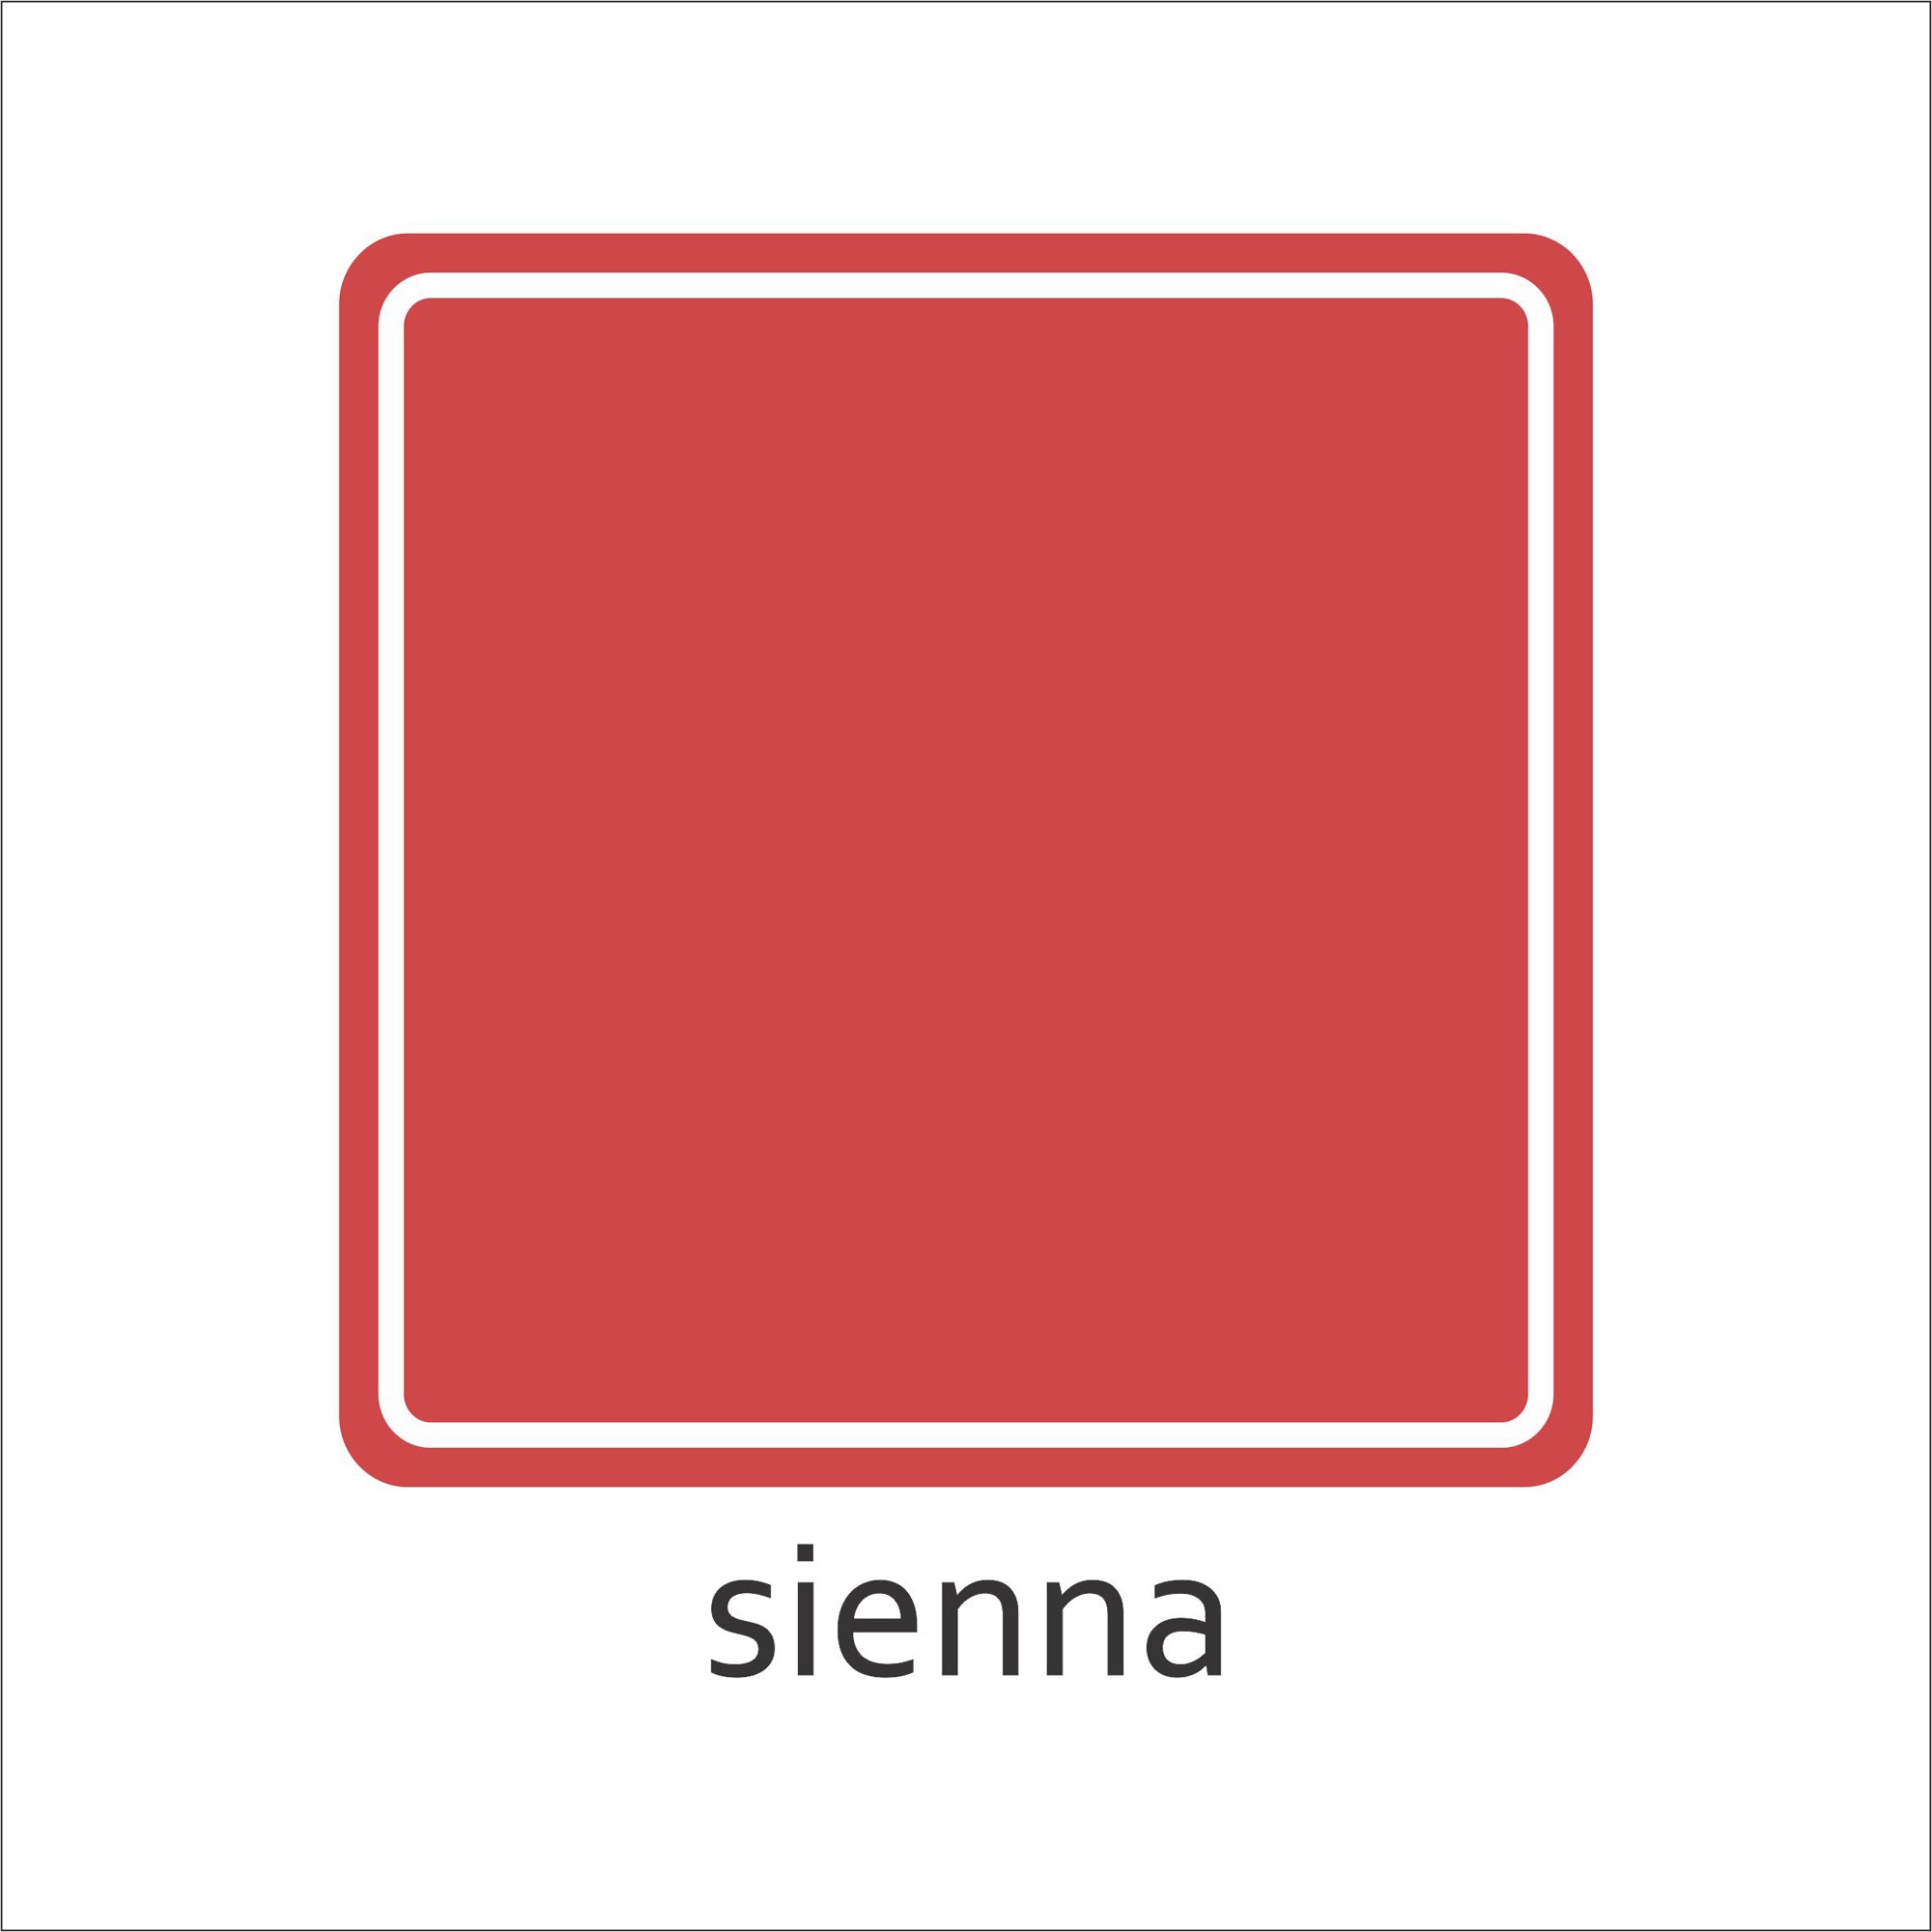 Solid Color Tile Sticker Sample Bundle (set of 3 stickers)